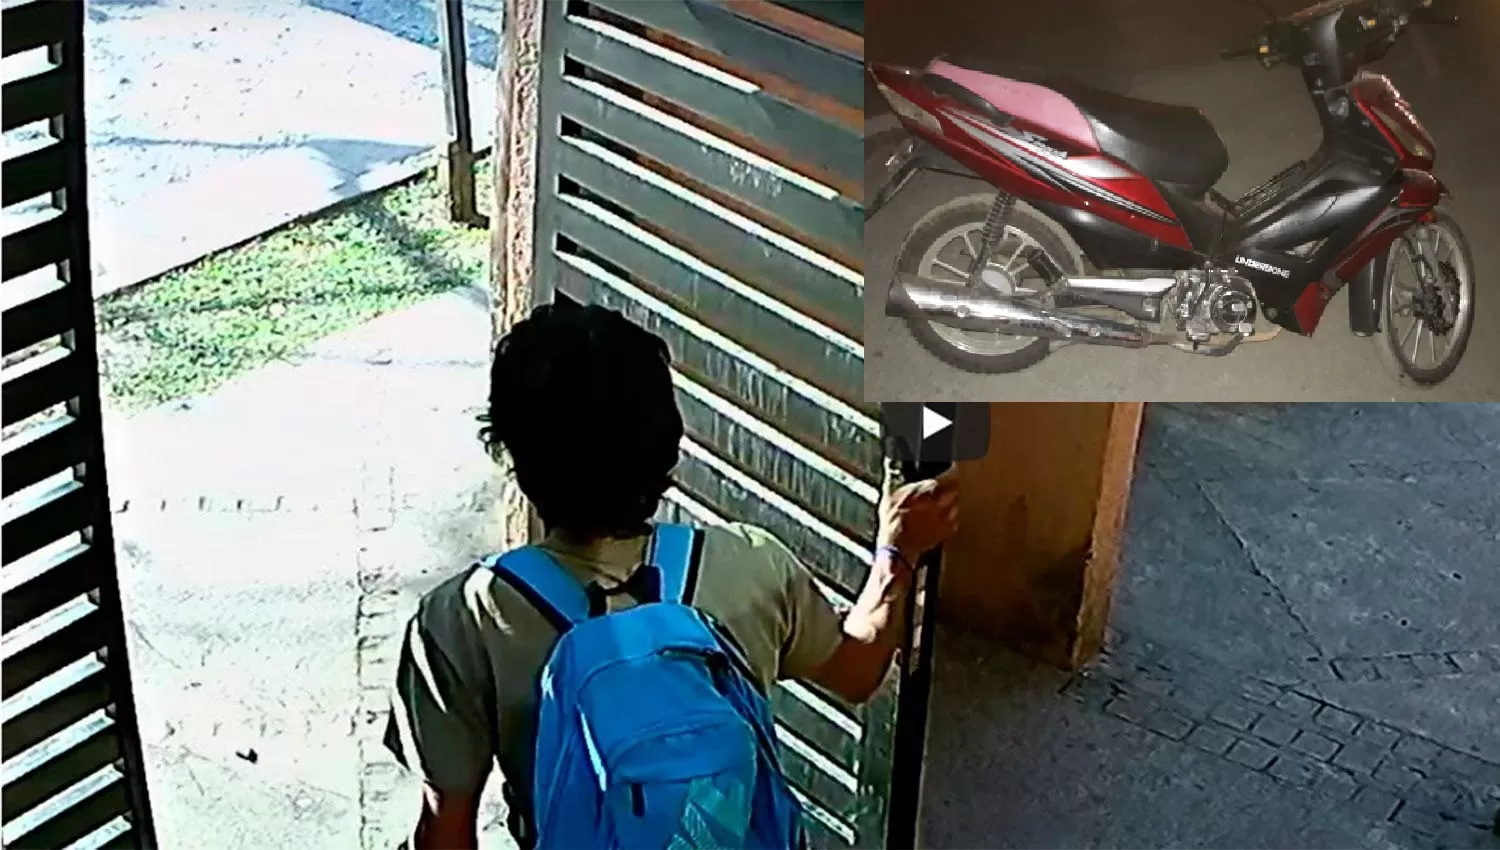 Fin del misterio: durante un allanamiento encontraron la moto robada del jardinero